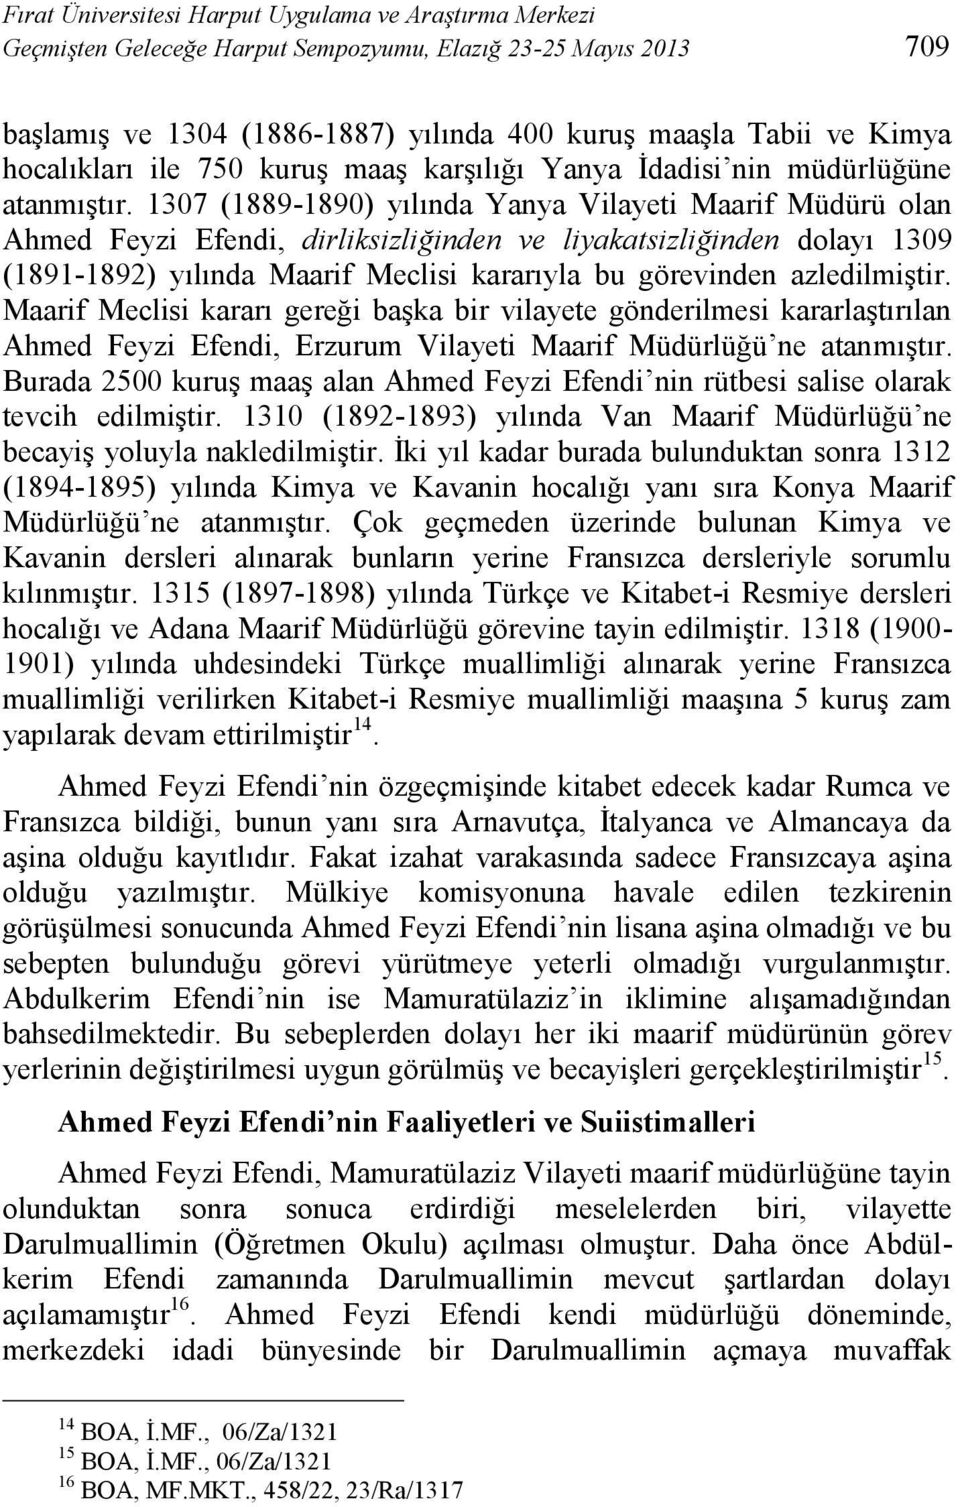 1307 (1889-1890) yılında Yanya Vilayeti Maarif Müdürü olan Ahmed Feyzi Efendi, dirliksizliğinden ve liyakatsizliğinden dolayı 1309 (1891-1892) yılında Maarif Meclisi kararıyla bu görevinden